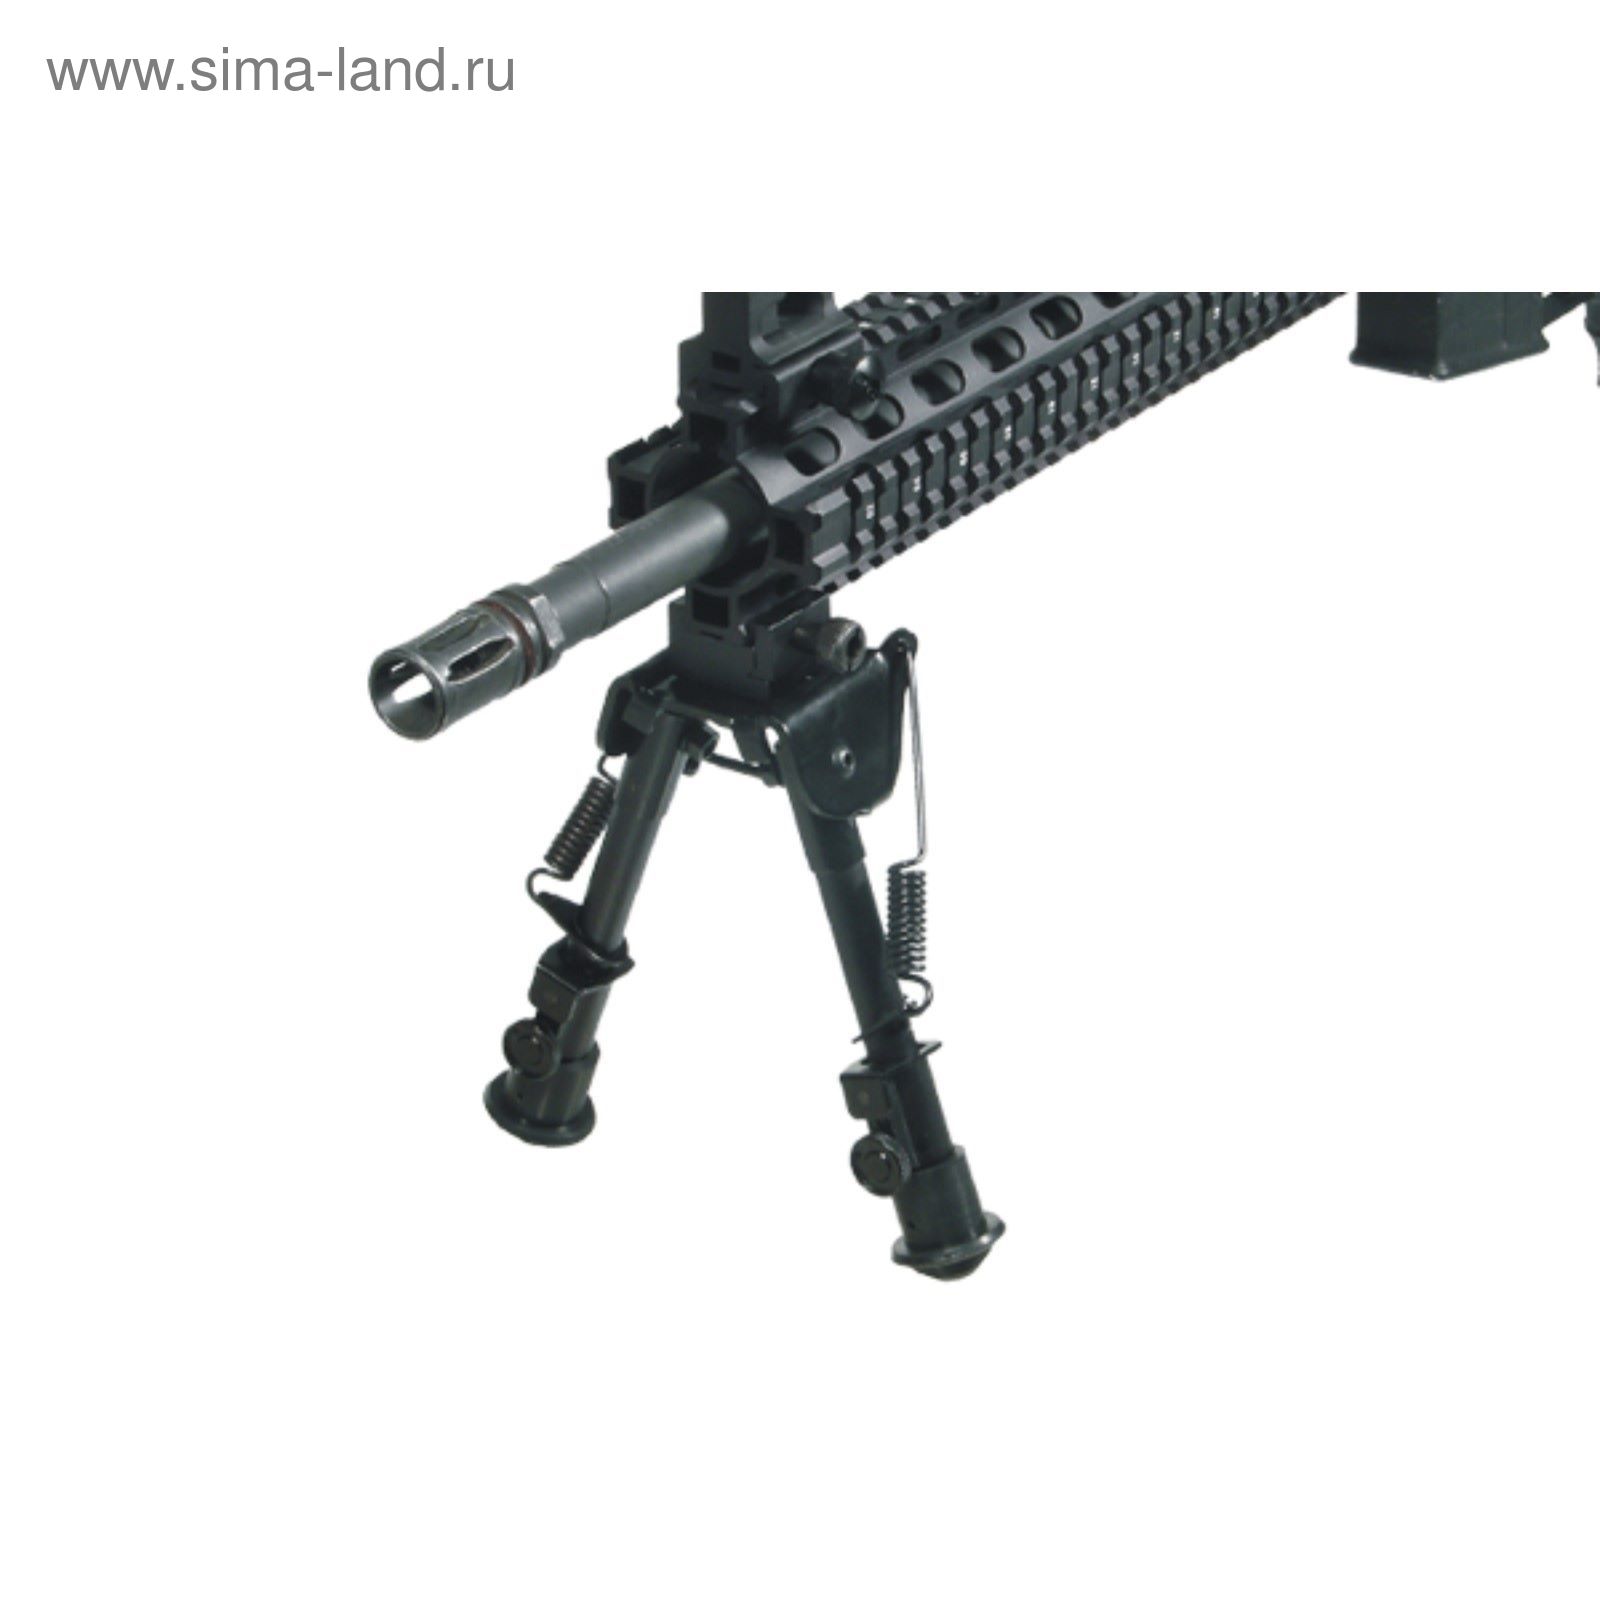 Сошки UTG для установки на оружие на планку Picatinny, регулируемые, высота 15 - 20 см